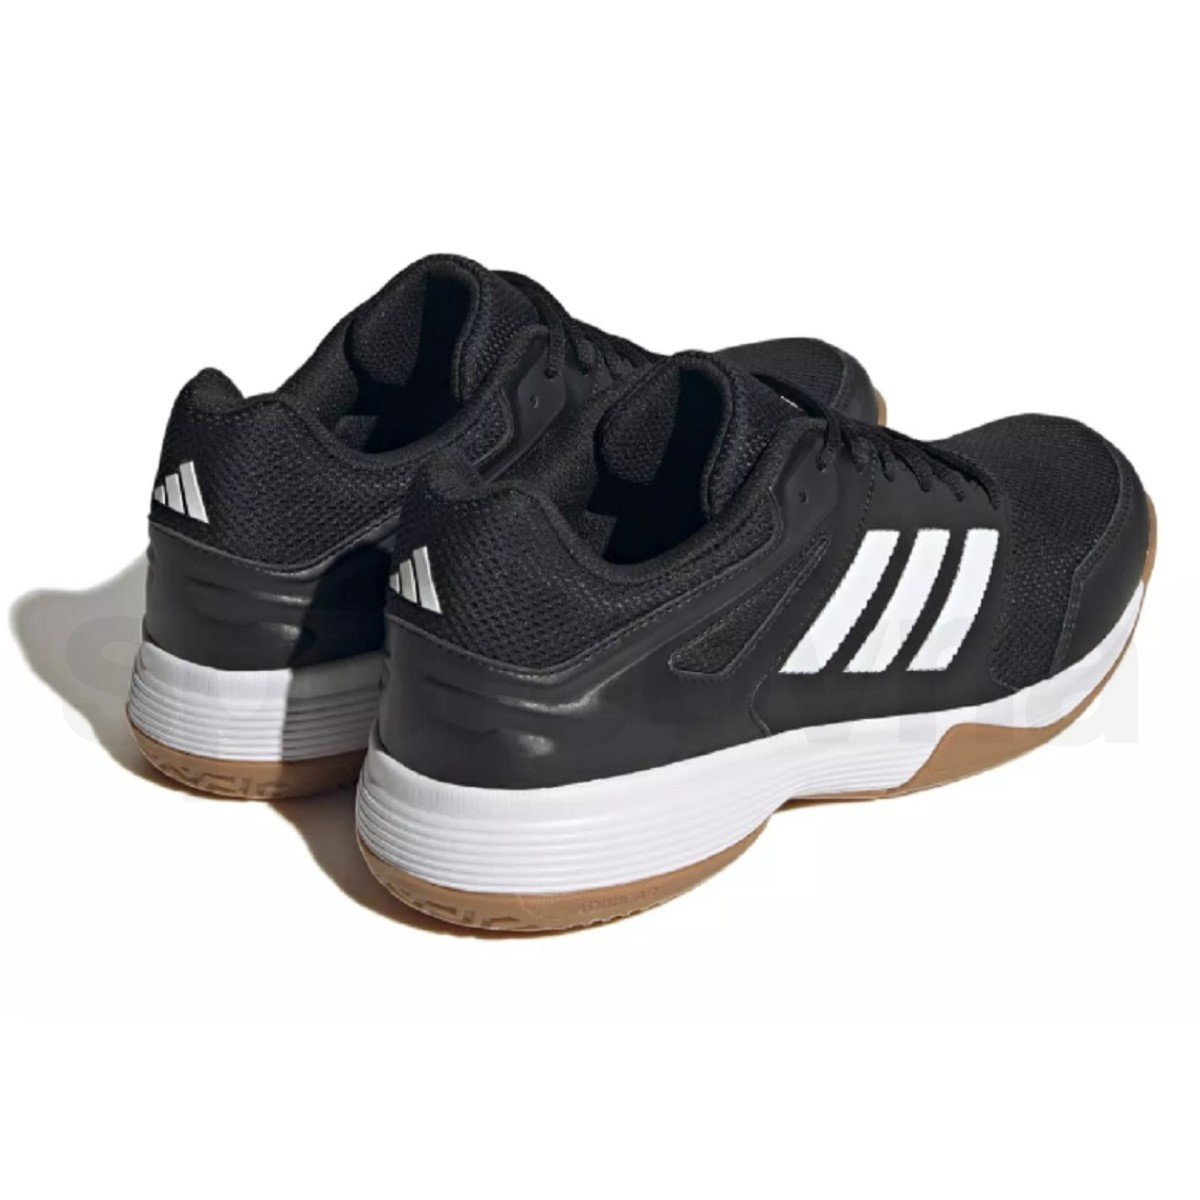 Obuv Adidas Speedcourt M - černá/bílá